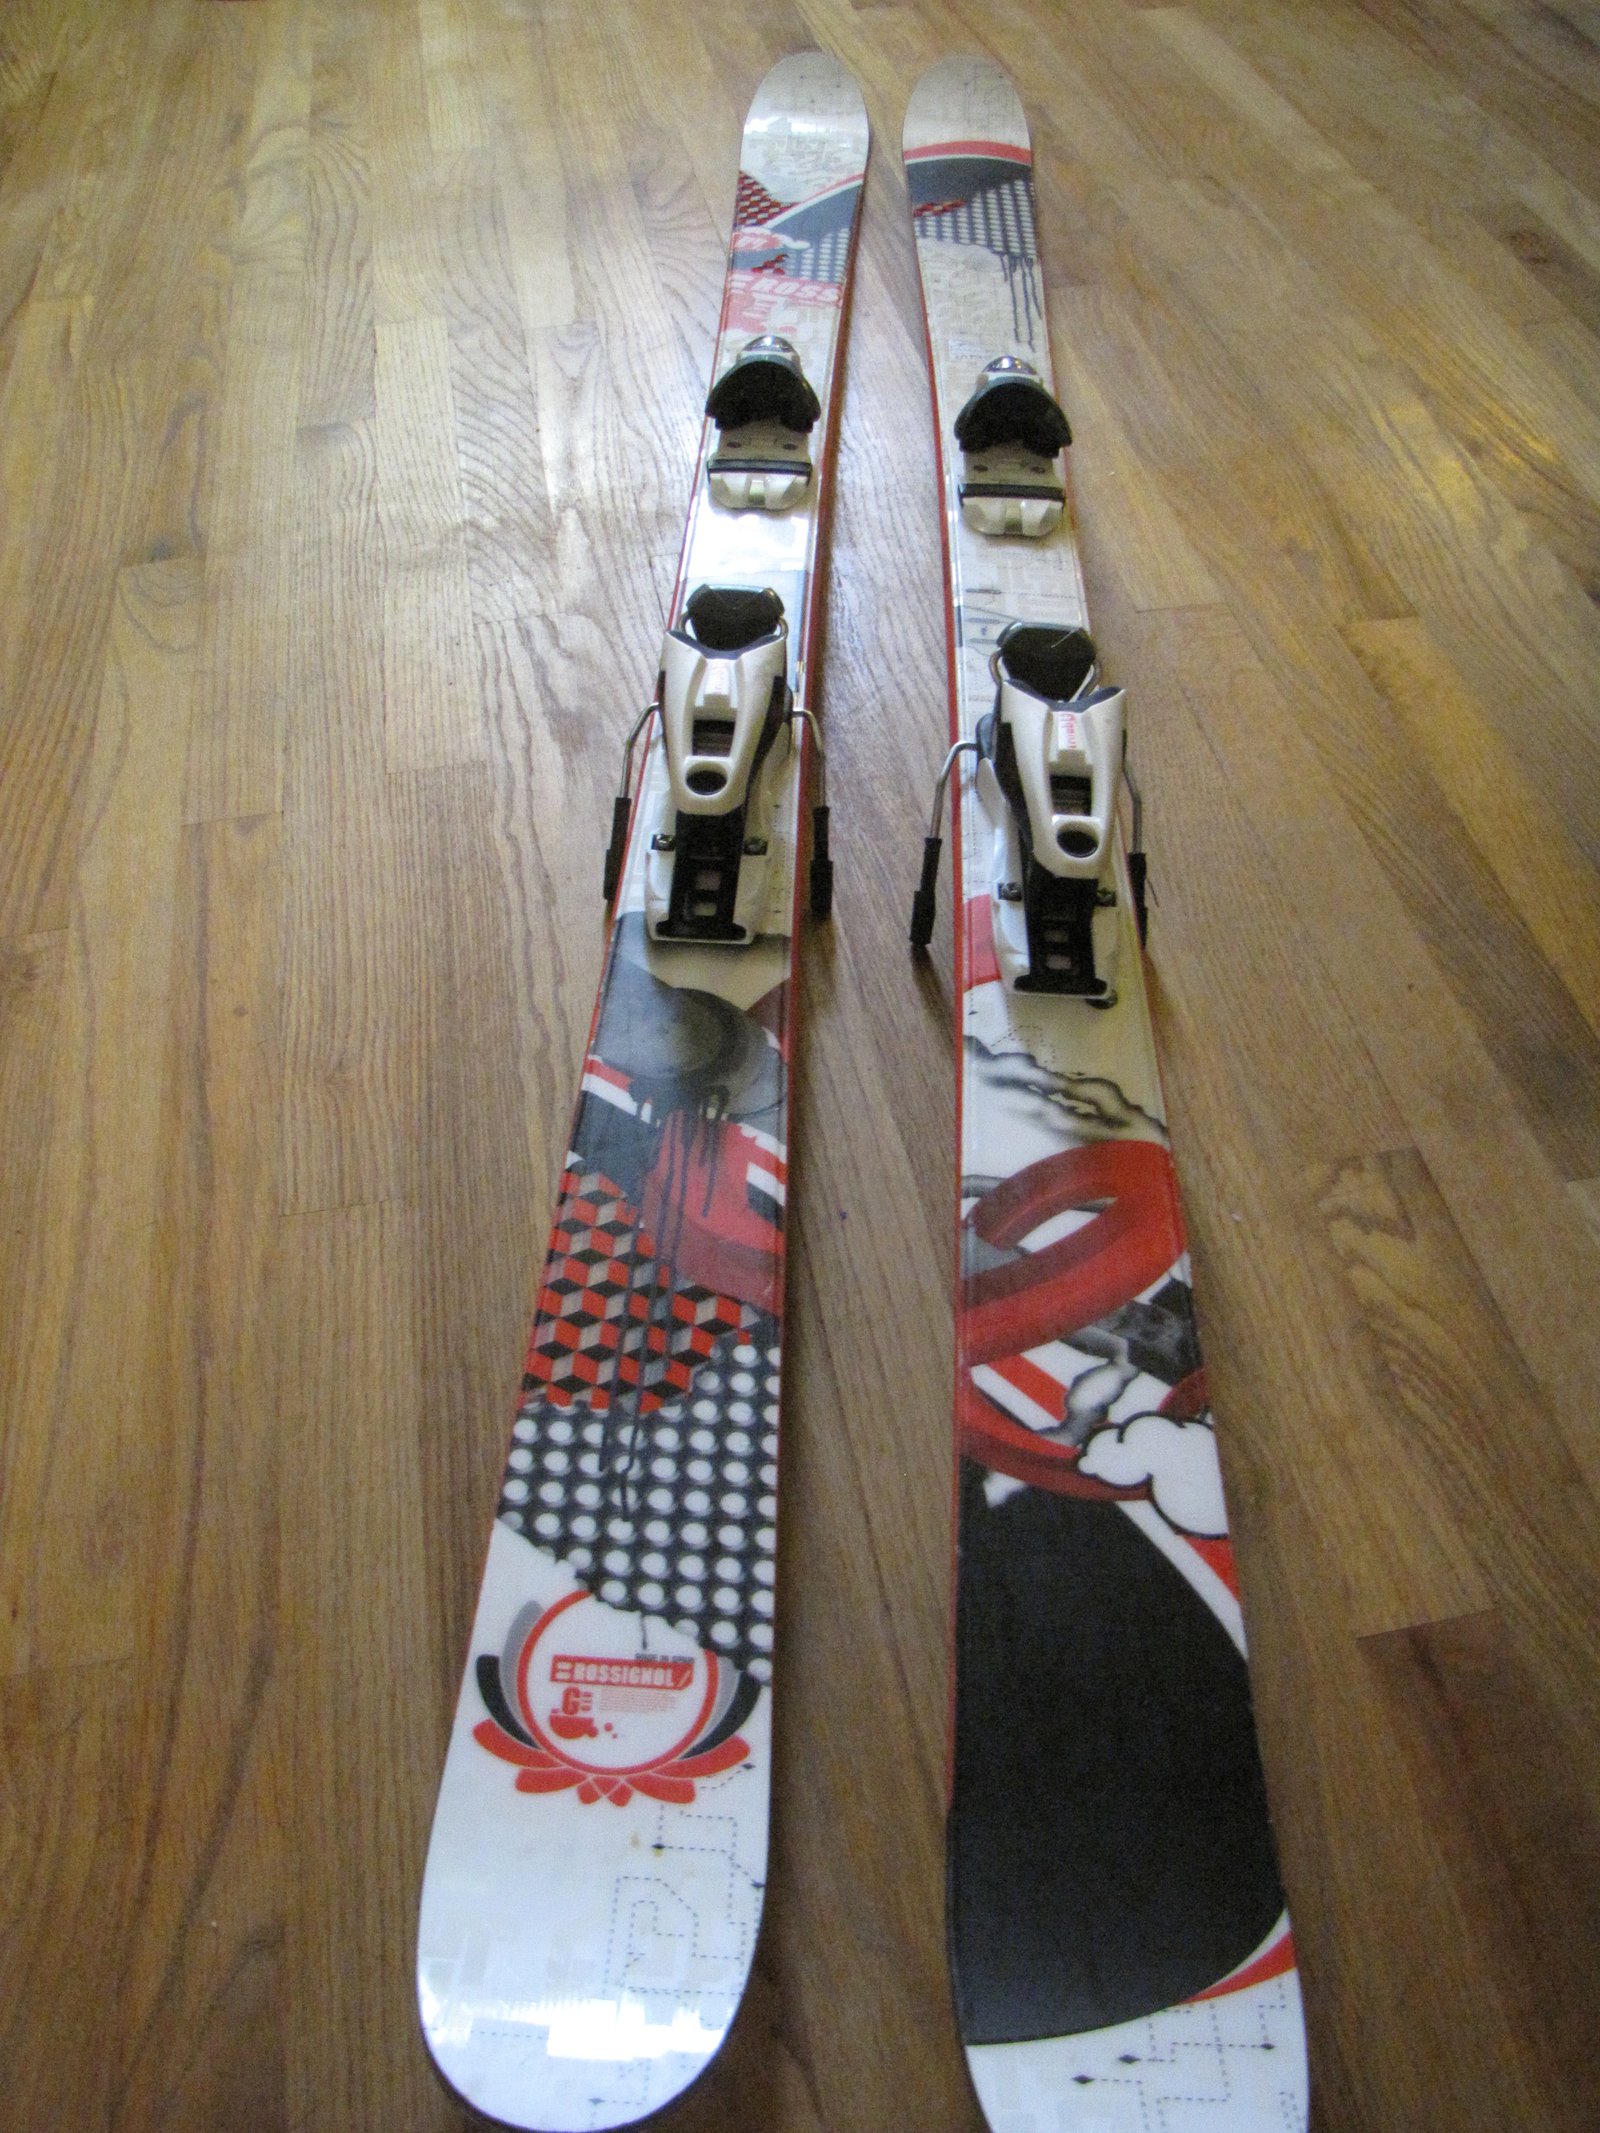 2008 Rossignol Ghetto skis 167cm